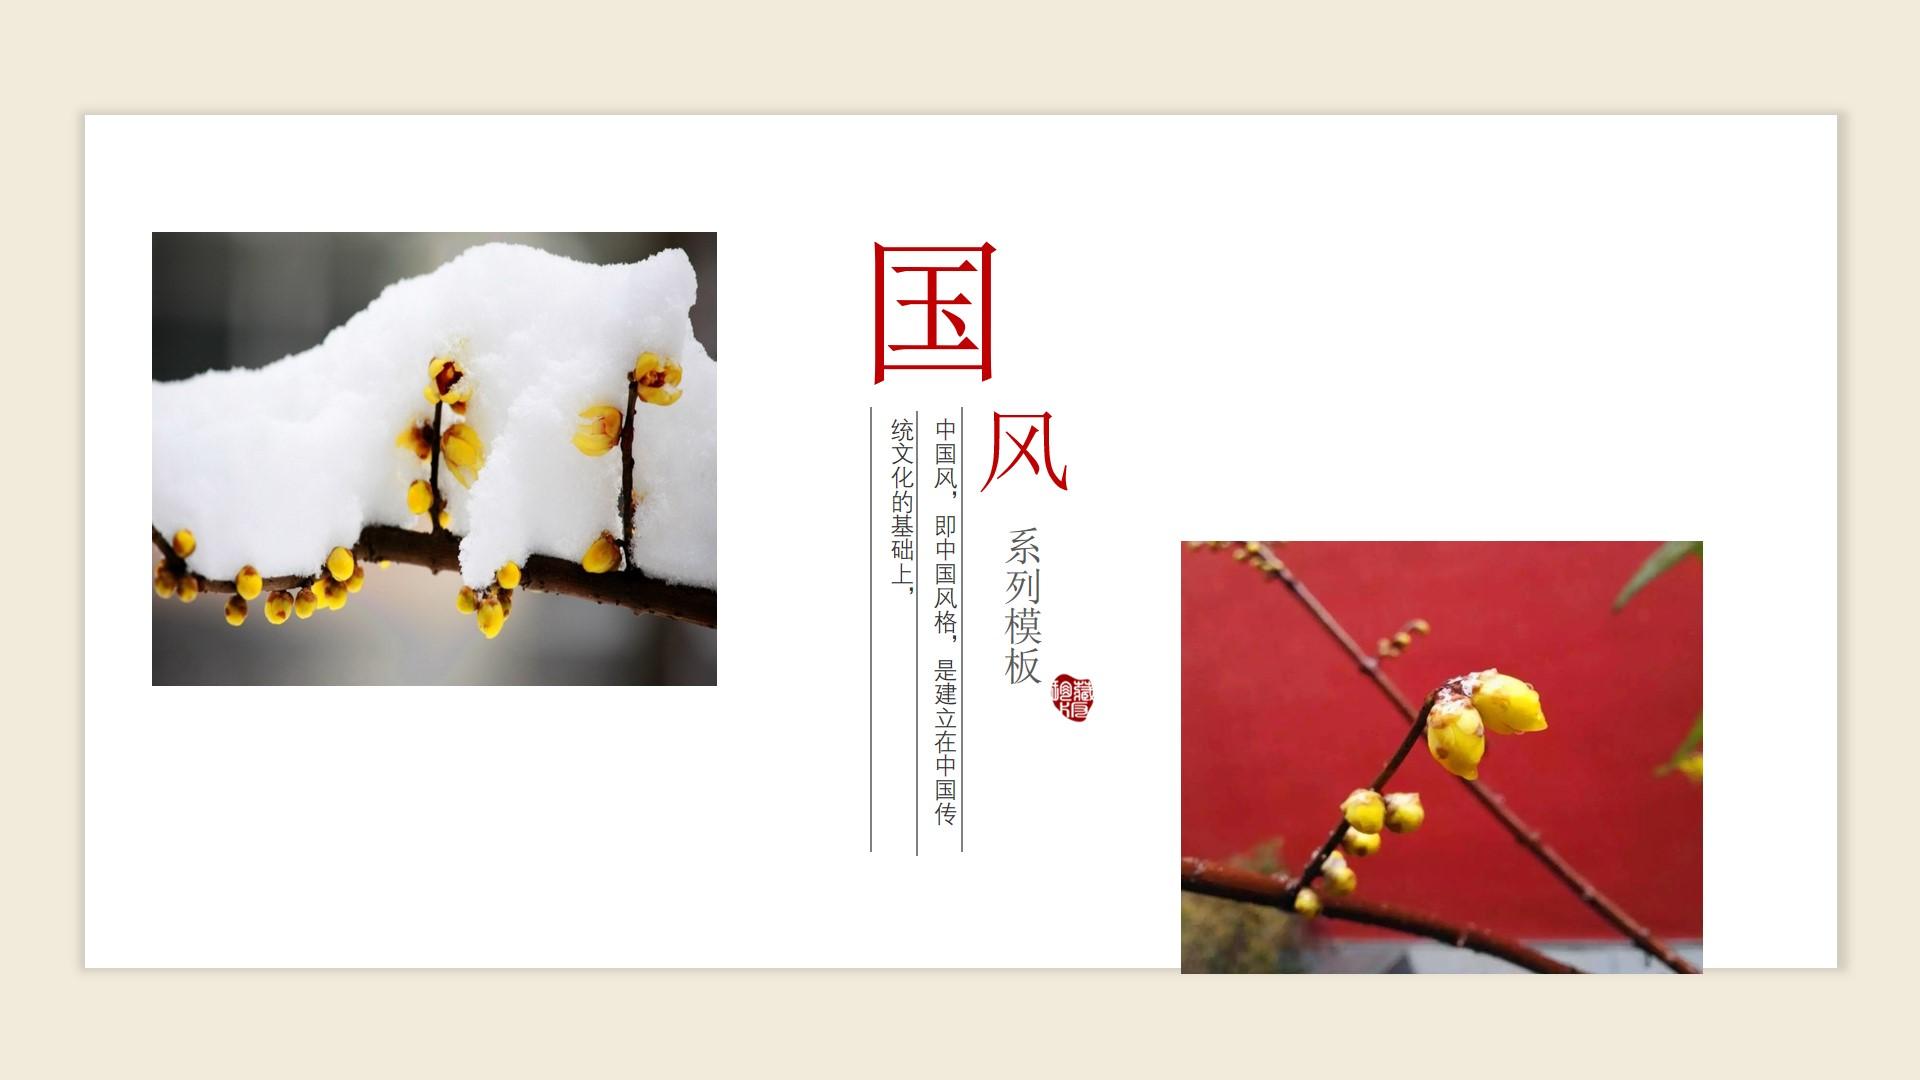 教育教学橙色白色卡通标准简洁中国风云素材PPT模板1672582536041